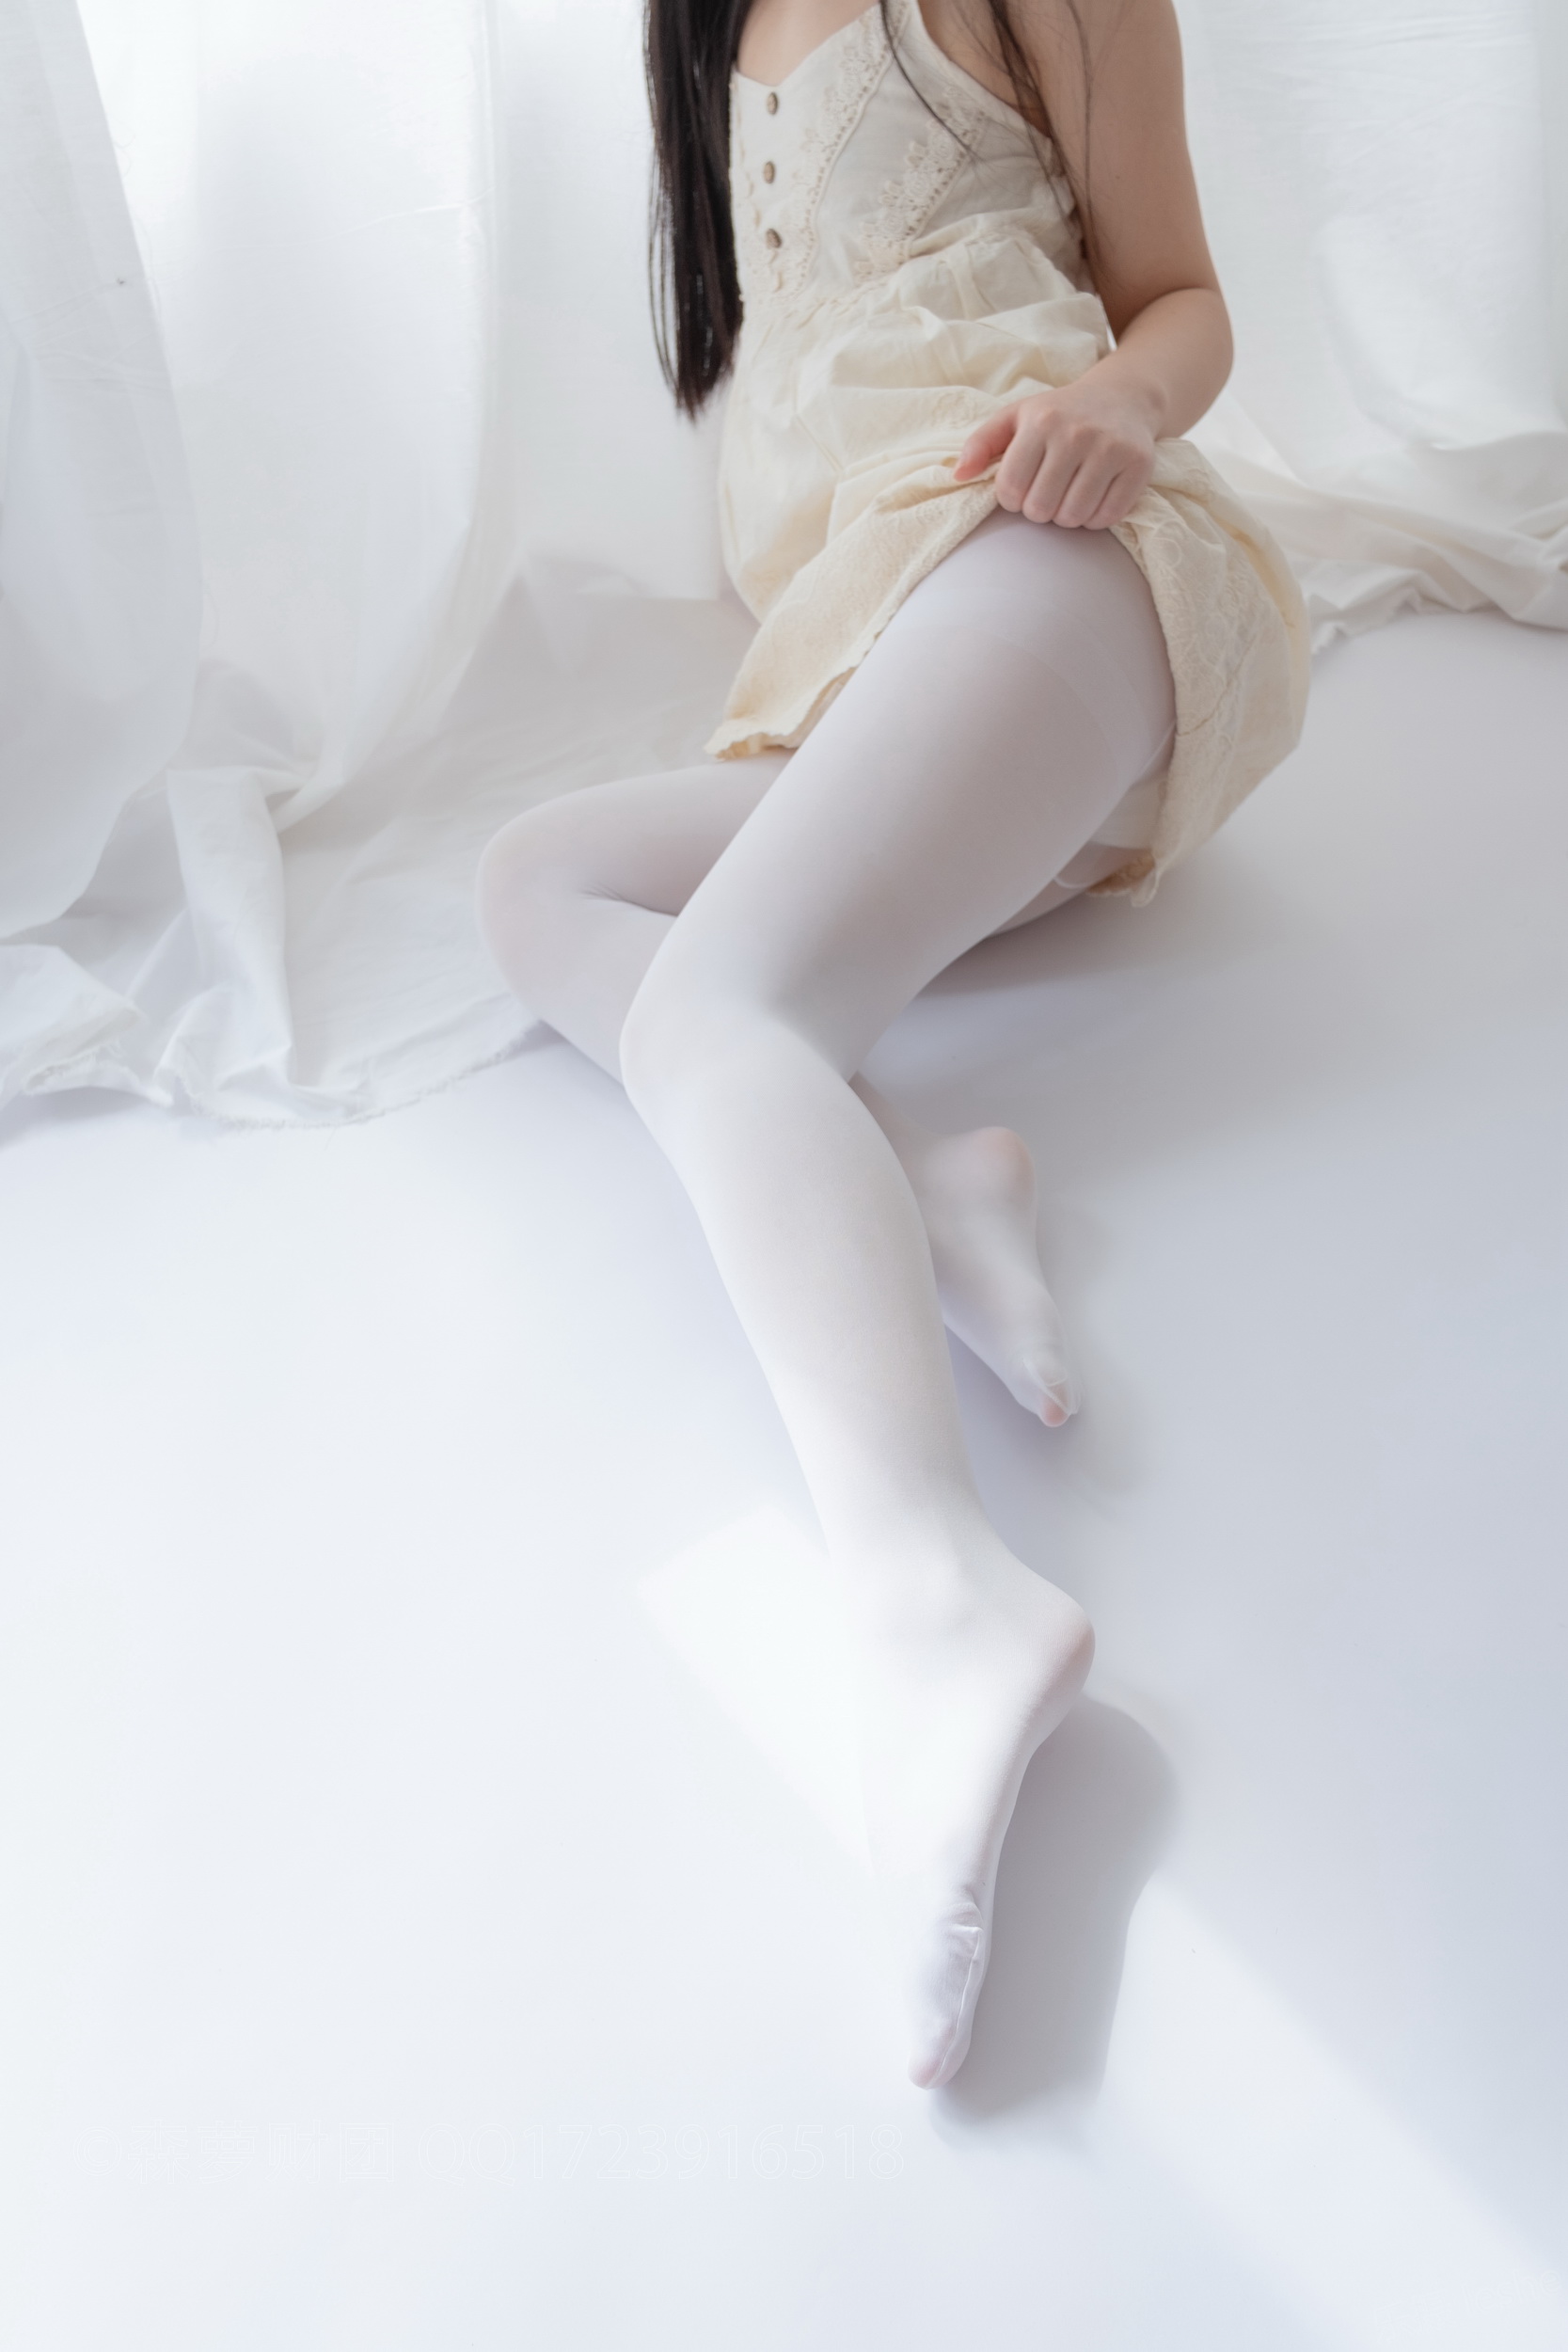 【森蘿財團】蘿莉絲足寫真 ALPHA-013 白絲女孩玩美足 - 貼圖 - 絲襪美腿 -